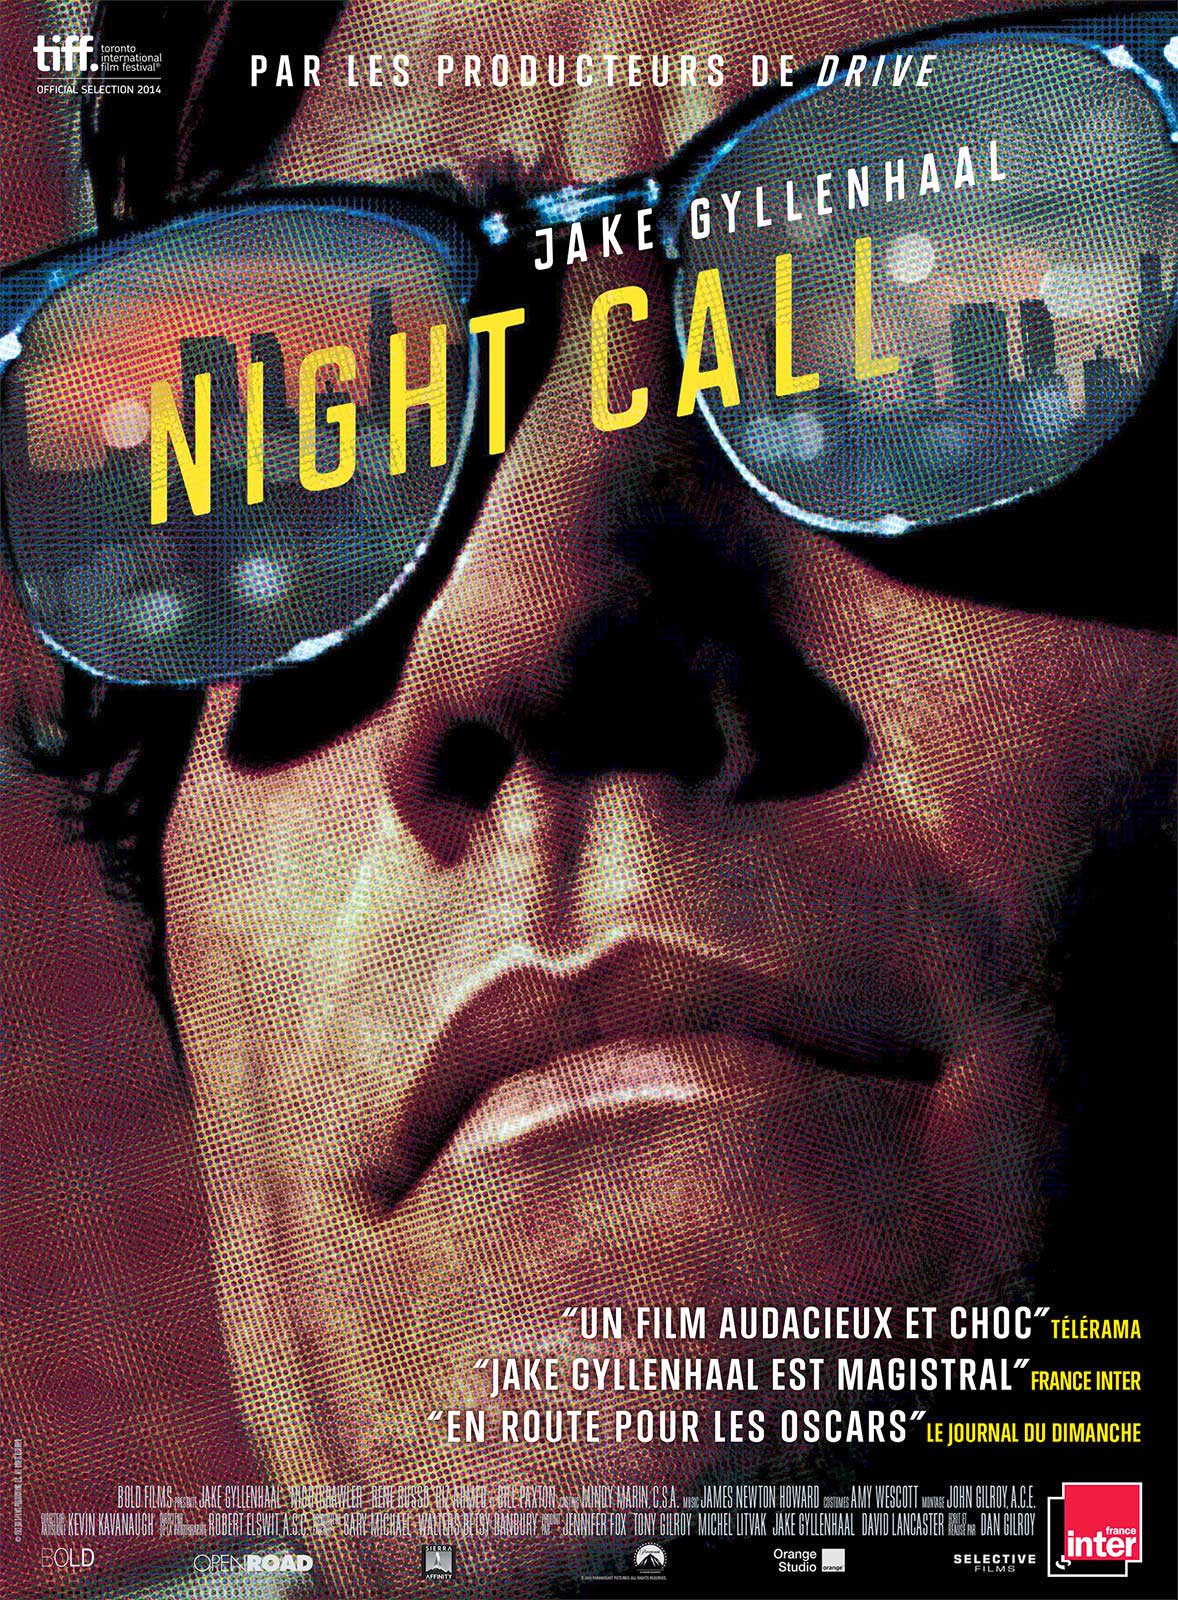 Résultat de recherche d'images pour "Night Call"